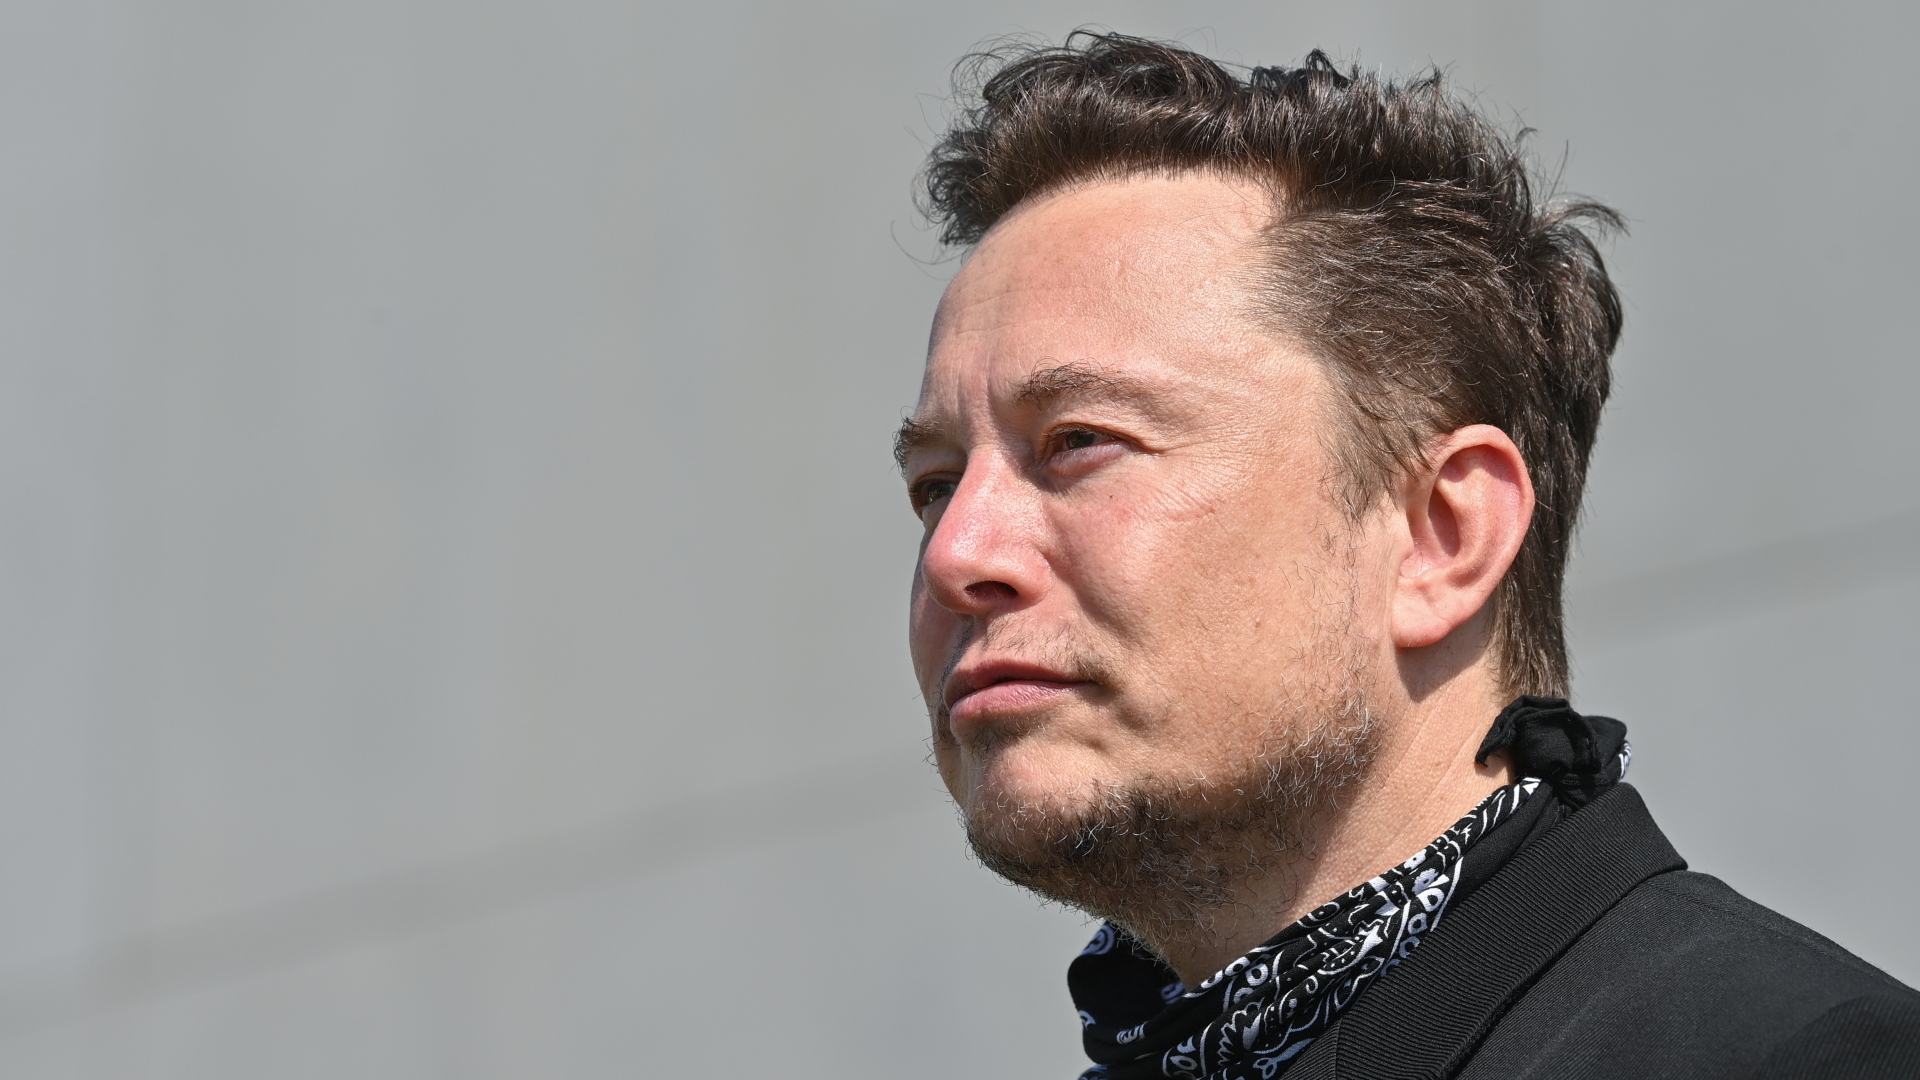 Después de la adquisición de Twitter: Musk quiere desbloquear a algunos usuarios prohibidos